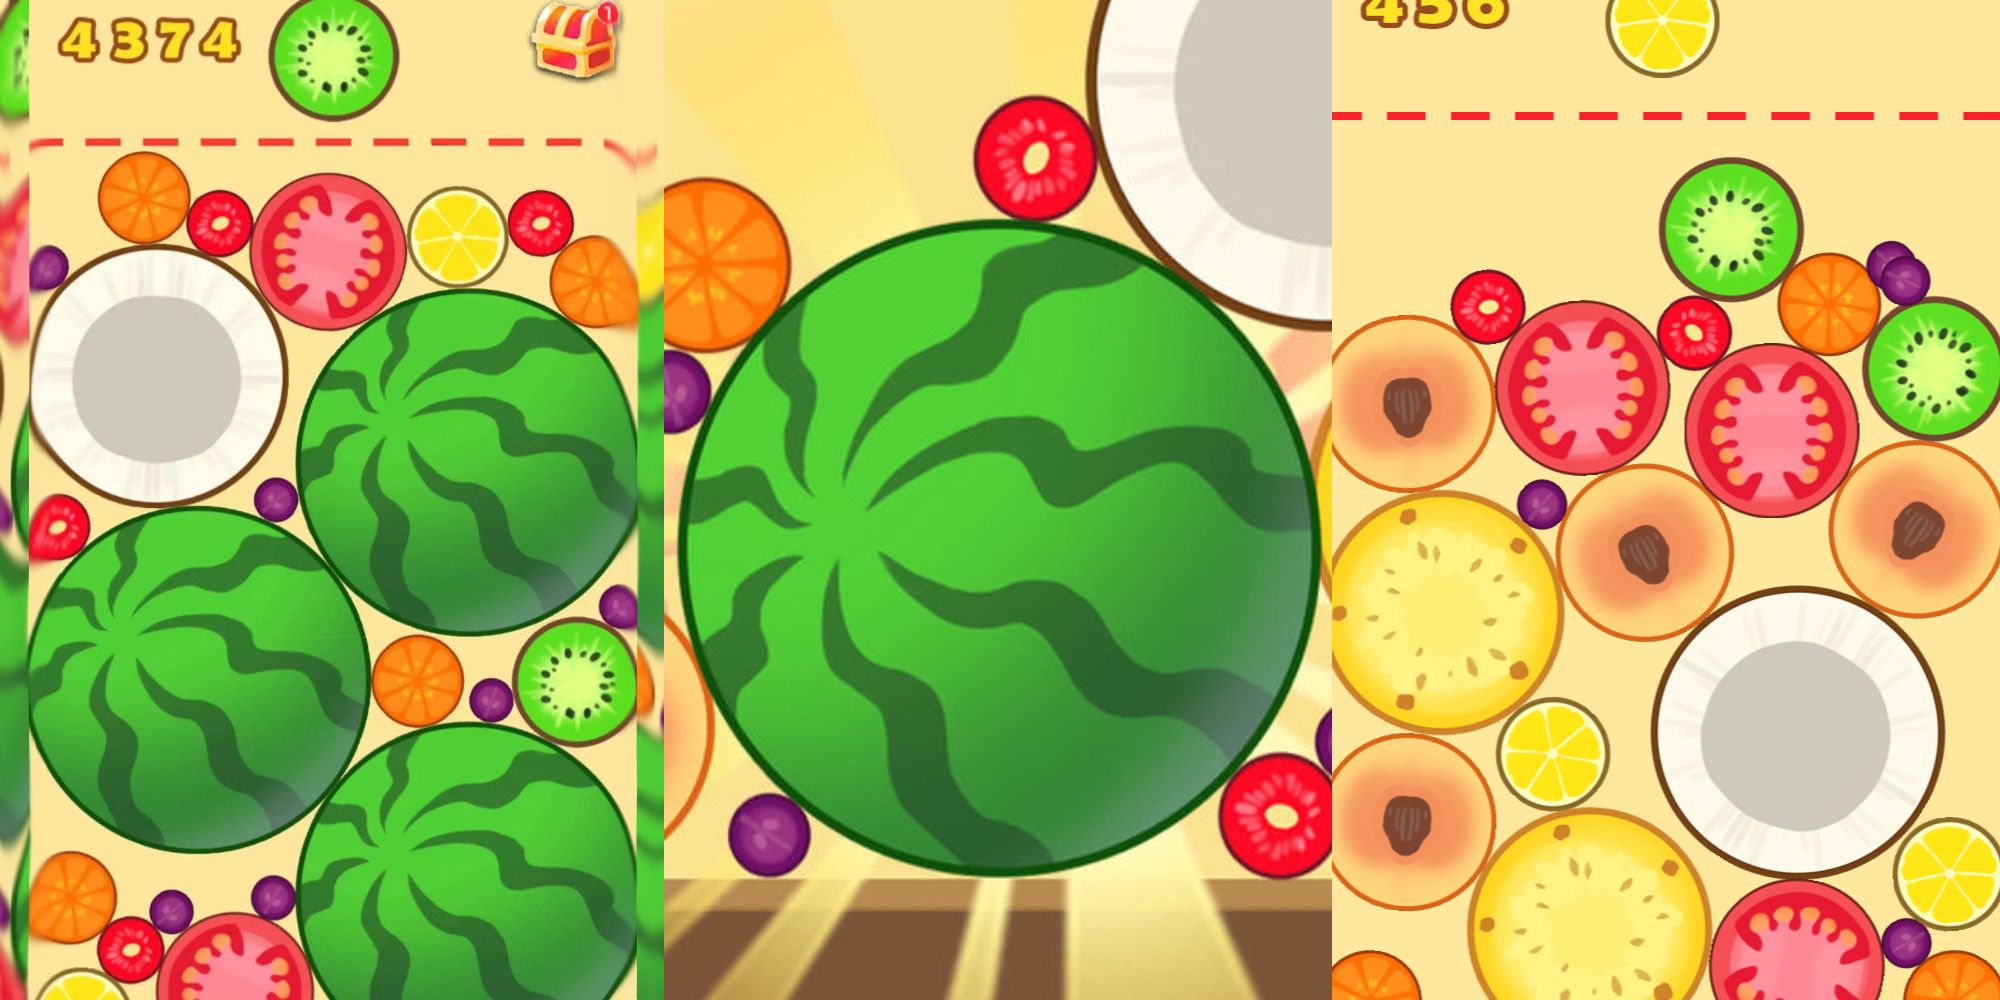 jogo suika original de melancia sintética lançado anteriormente